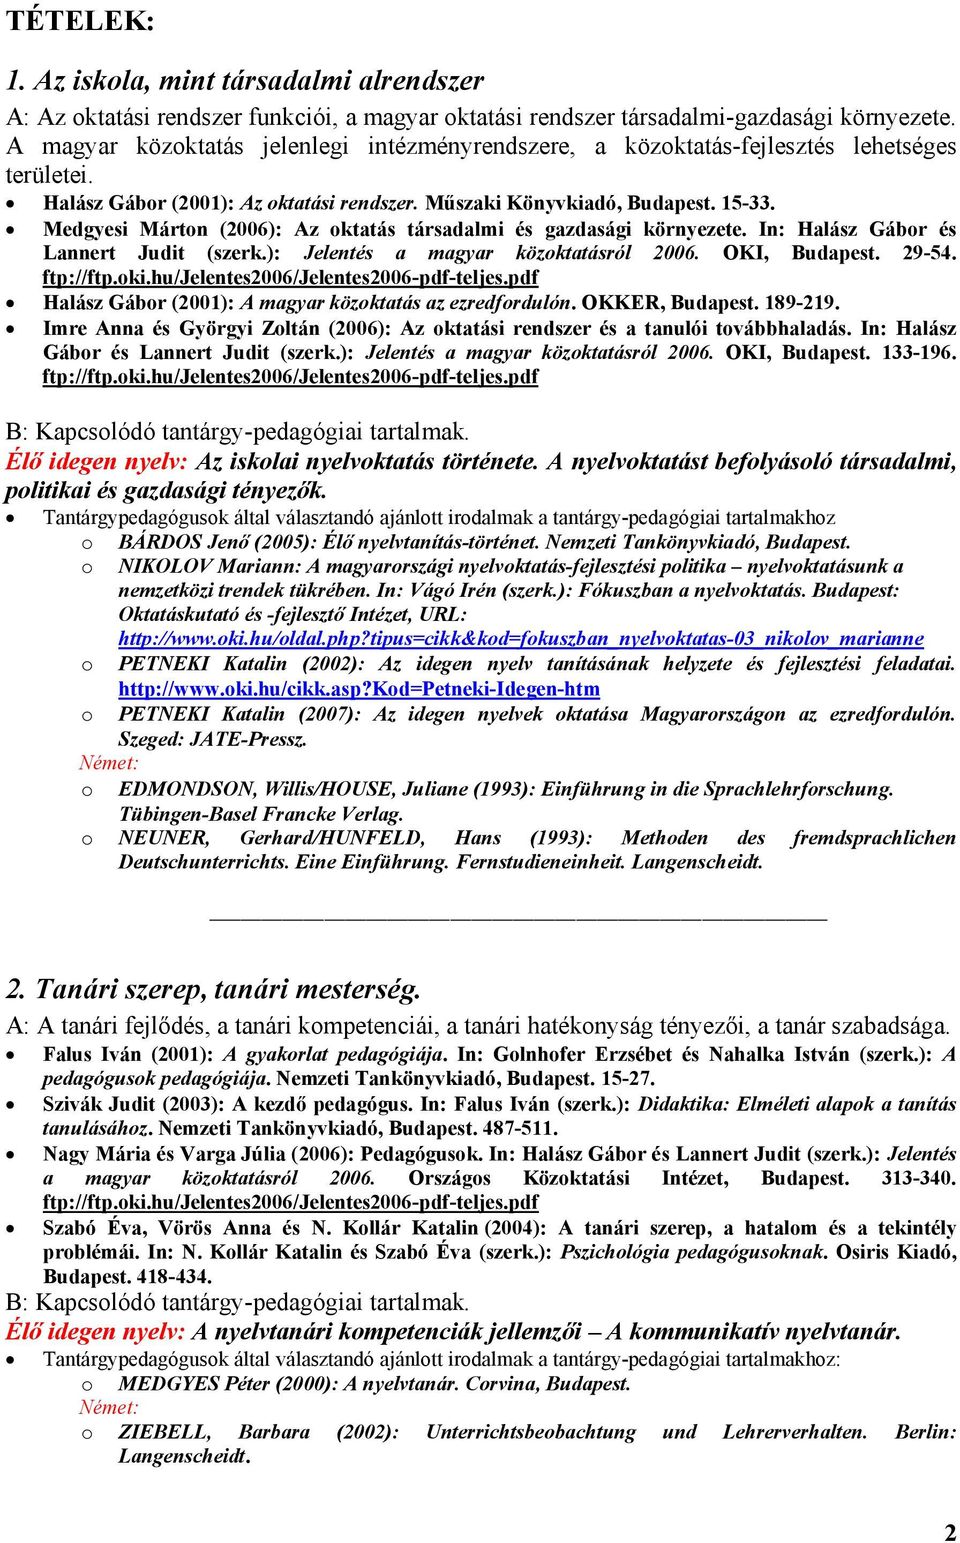 Medgyesi Mártn (2006): Az ktatás társadalmi és gazdasági környezete. In: Halász Gábr és Lannert Judit (szerk.): Jelentés a magyar közktatásról 2006. OKI, Budapest. 29-54. ftp://ftp.ki.